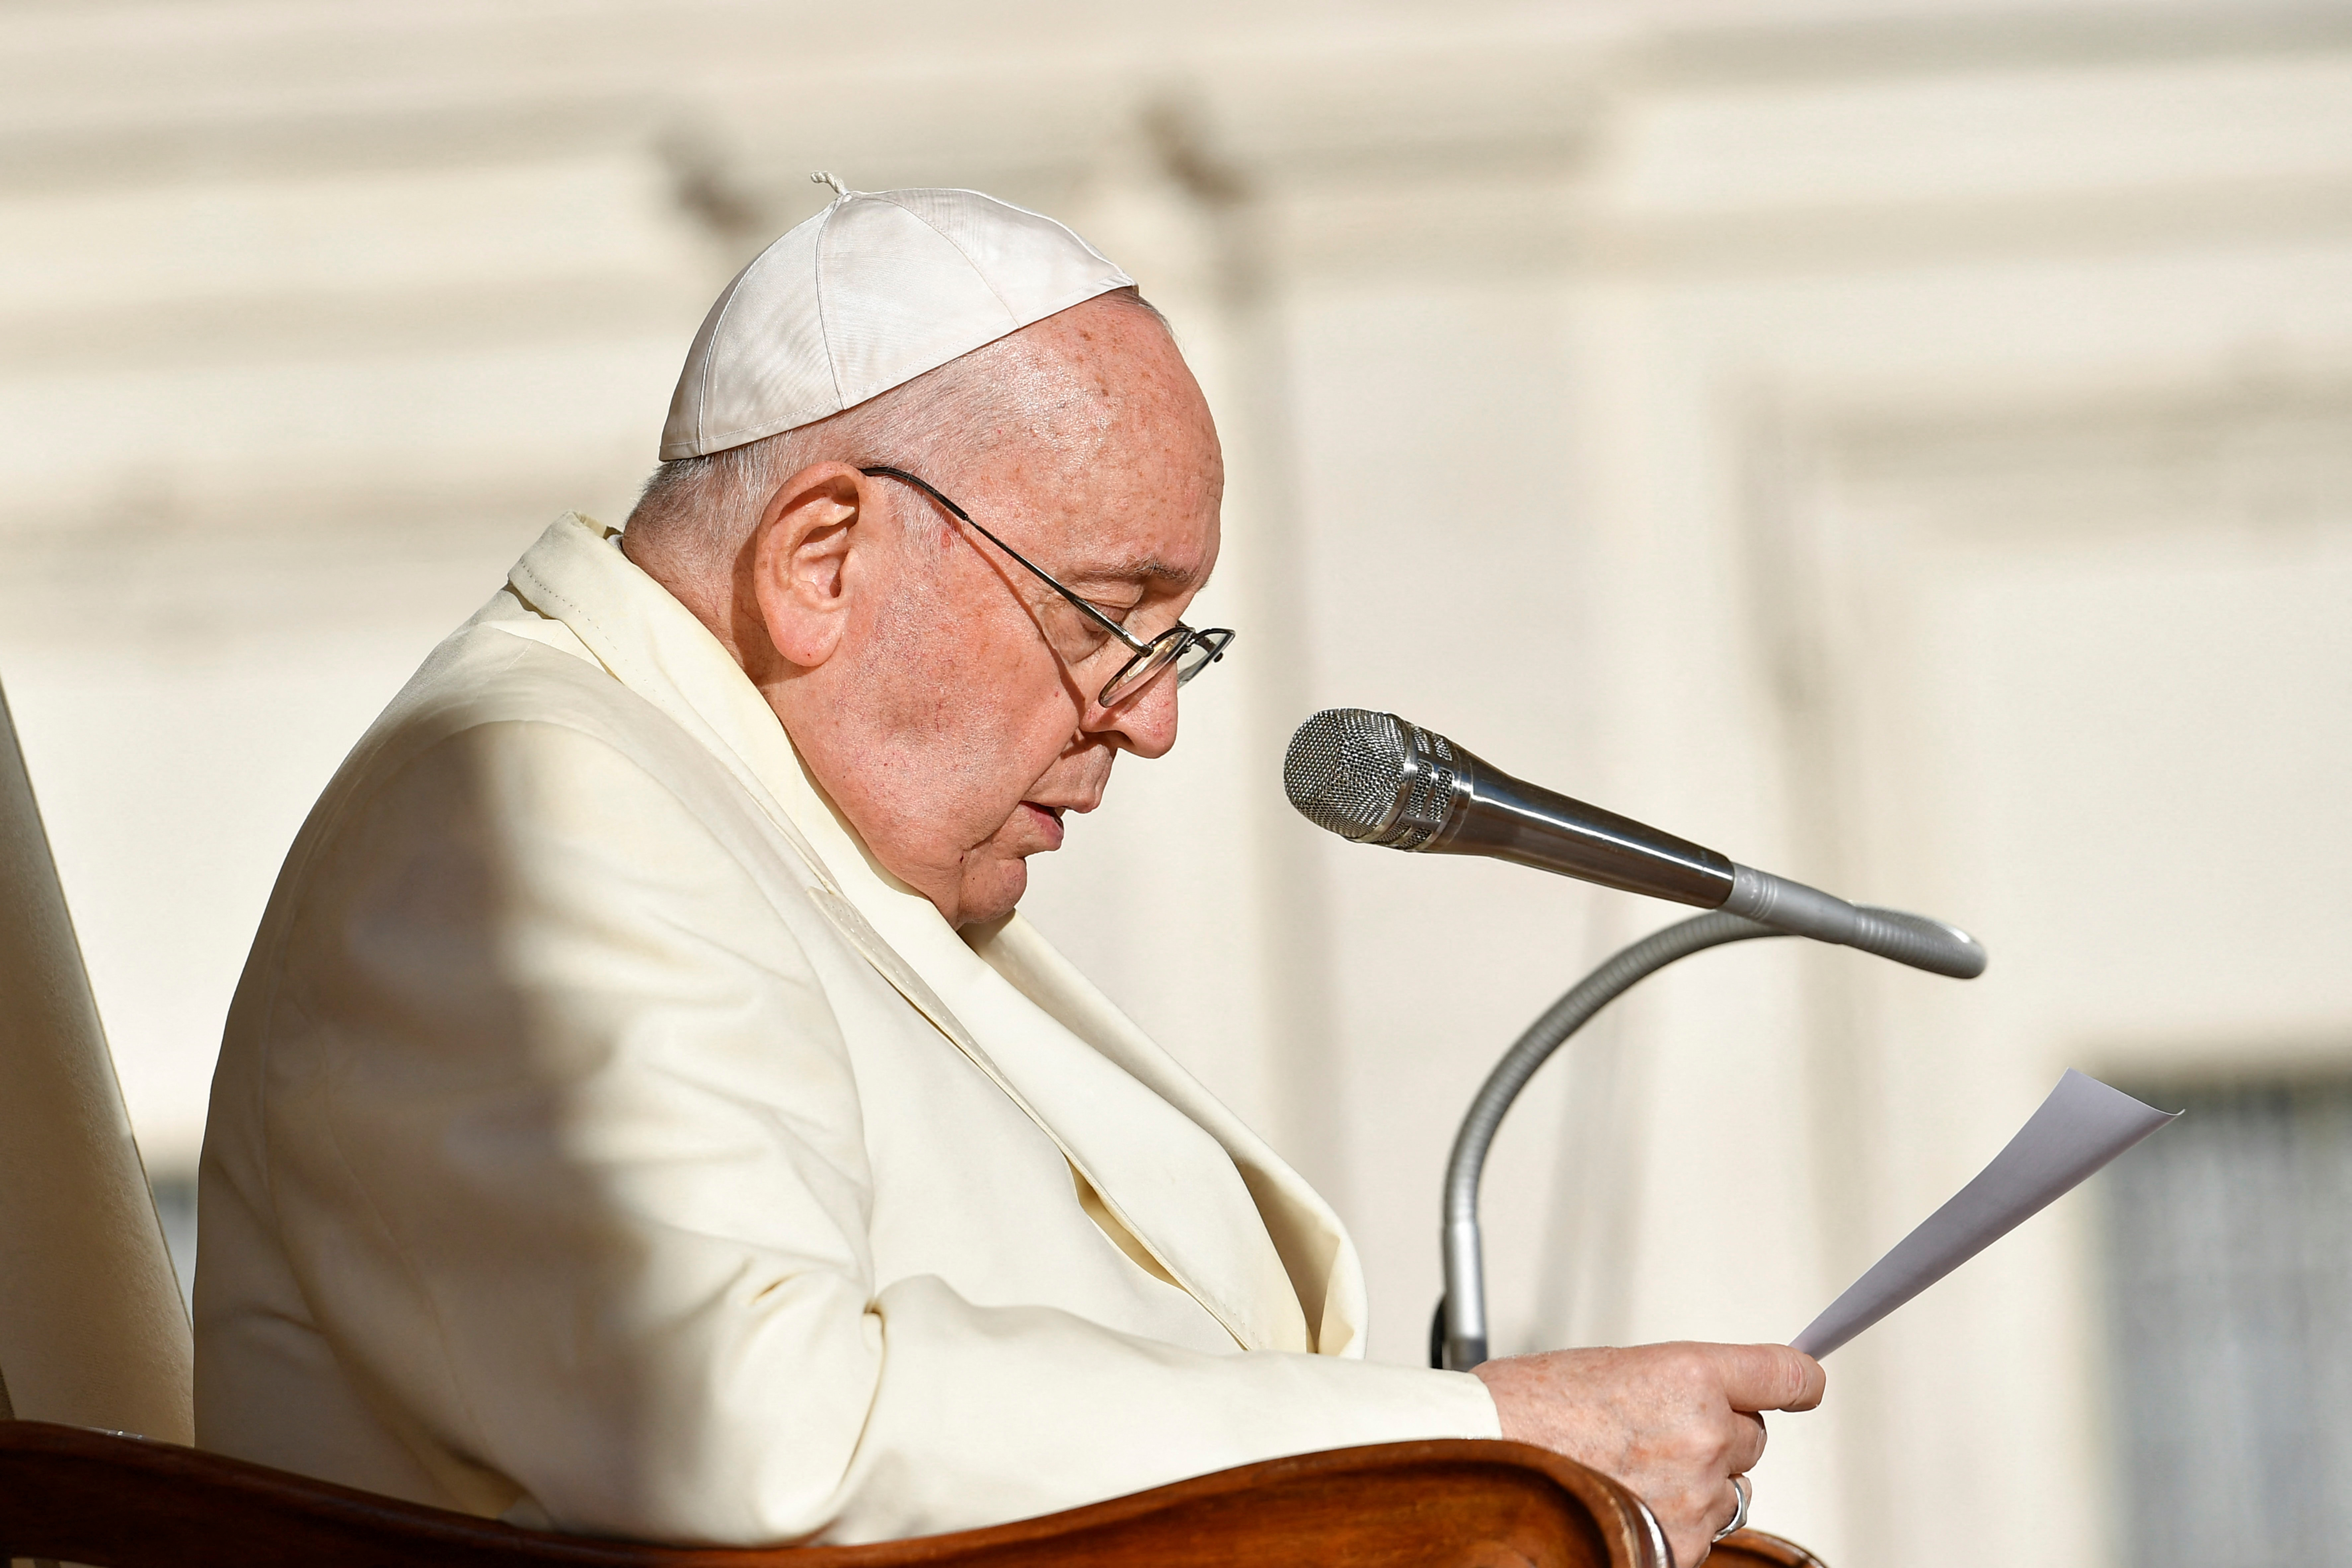 Gruppi ebraici criticano le dichiarazioni del Papa sul “terrorismo” e chiedono chiarimenti